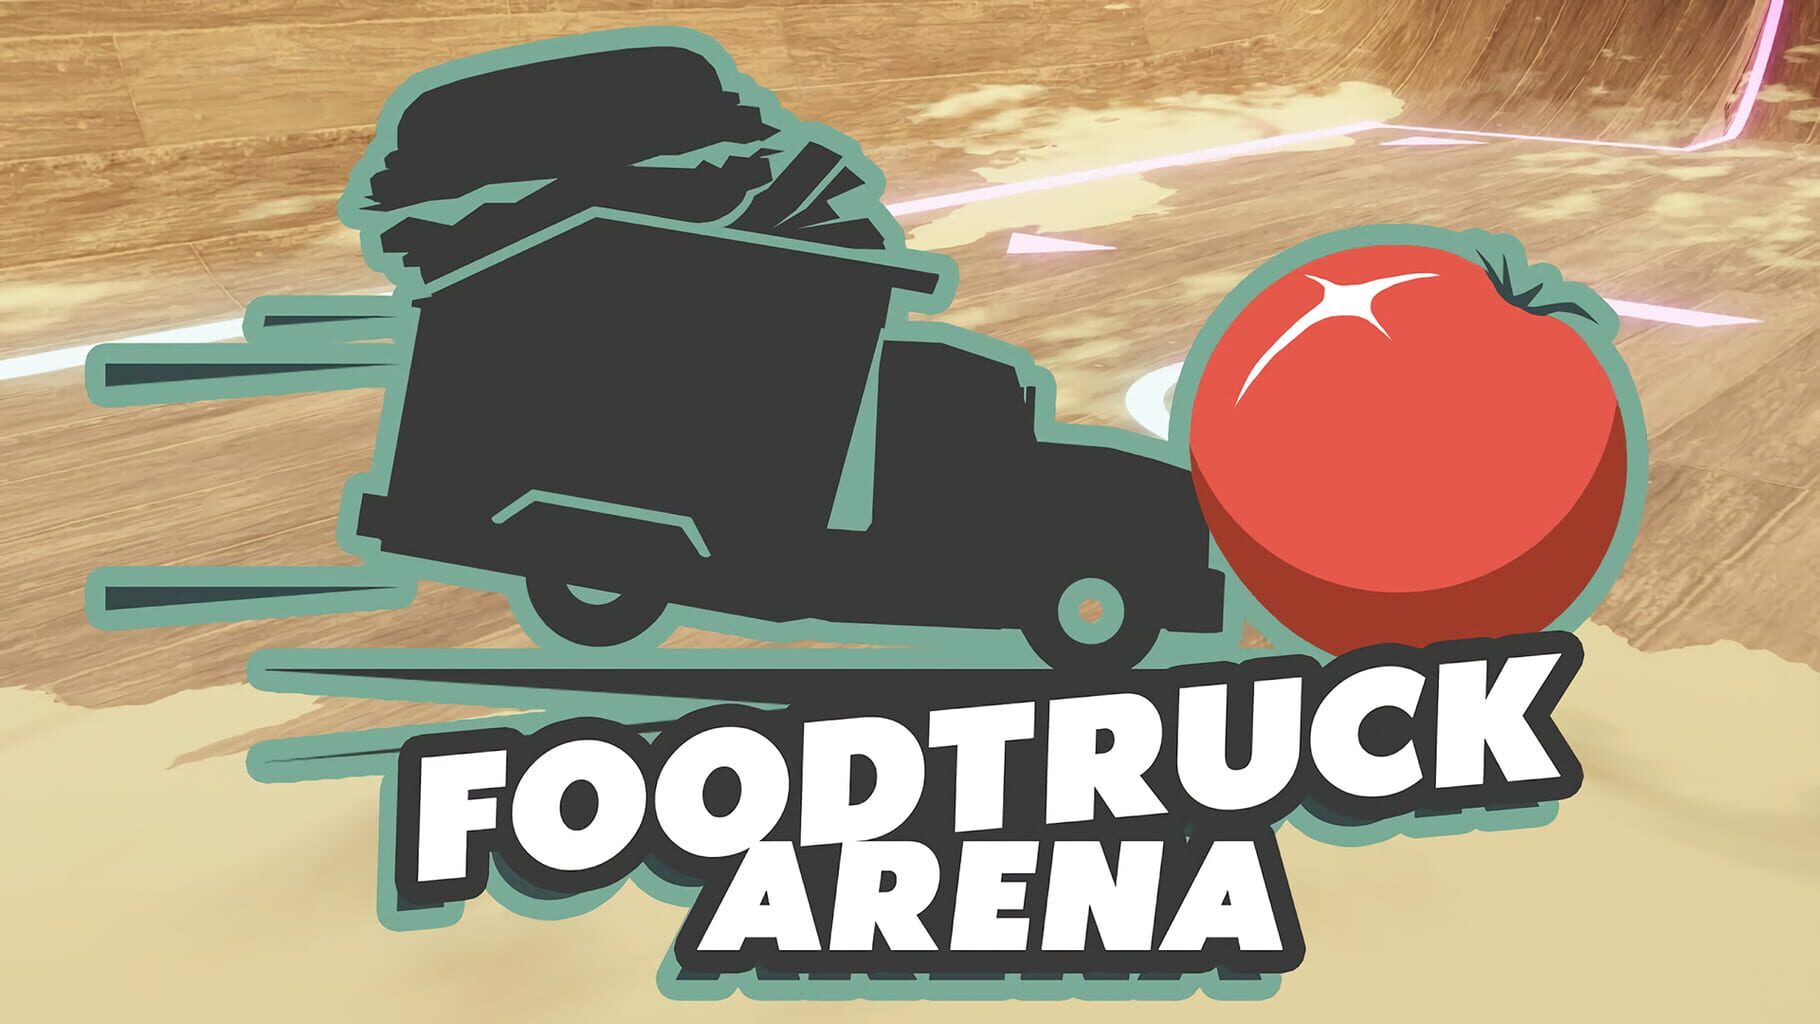 Foodtruck Arena artwork